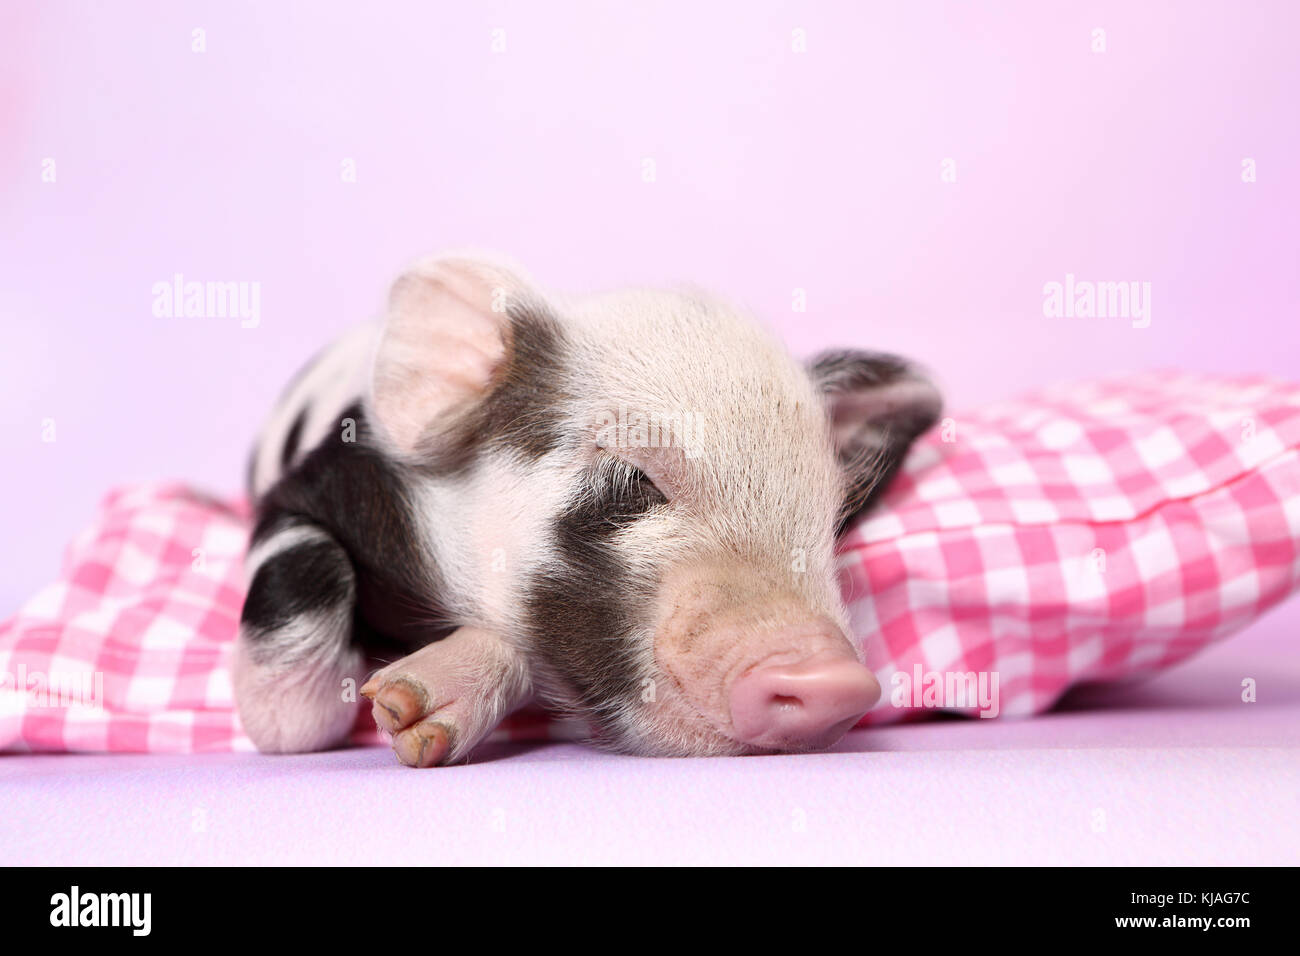 Hausschwein, Turopolje x?. Ferkel schlafen auf rosa-karierten Kissen. Studio Bild gegen einen rosa Hintergrund gesehen. Deutschland Stockfoto